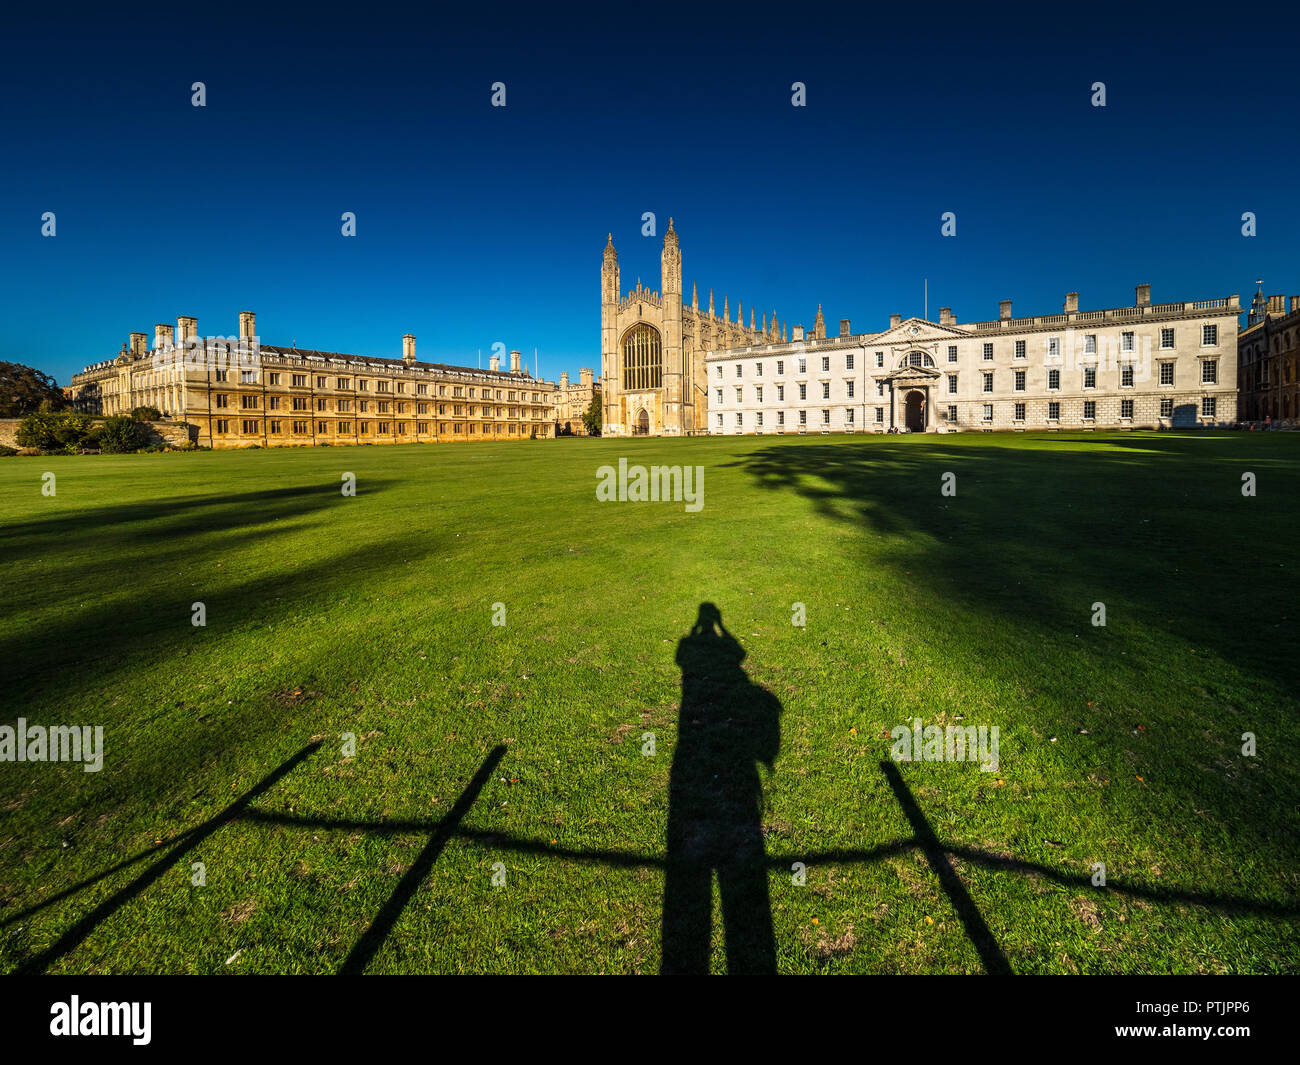 Cambridge Tourismus - ein Tourist macht ein Foto von der berühmten Kings College Kapelle auf dem Gelände der Kings College, Teil der Universität Cambridge Stockfoto